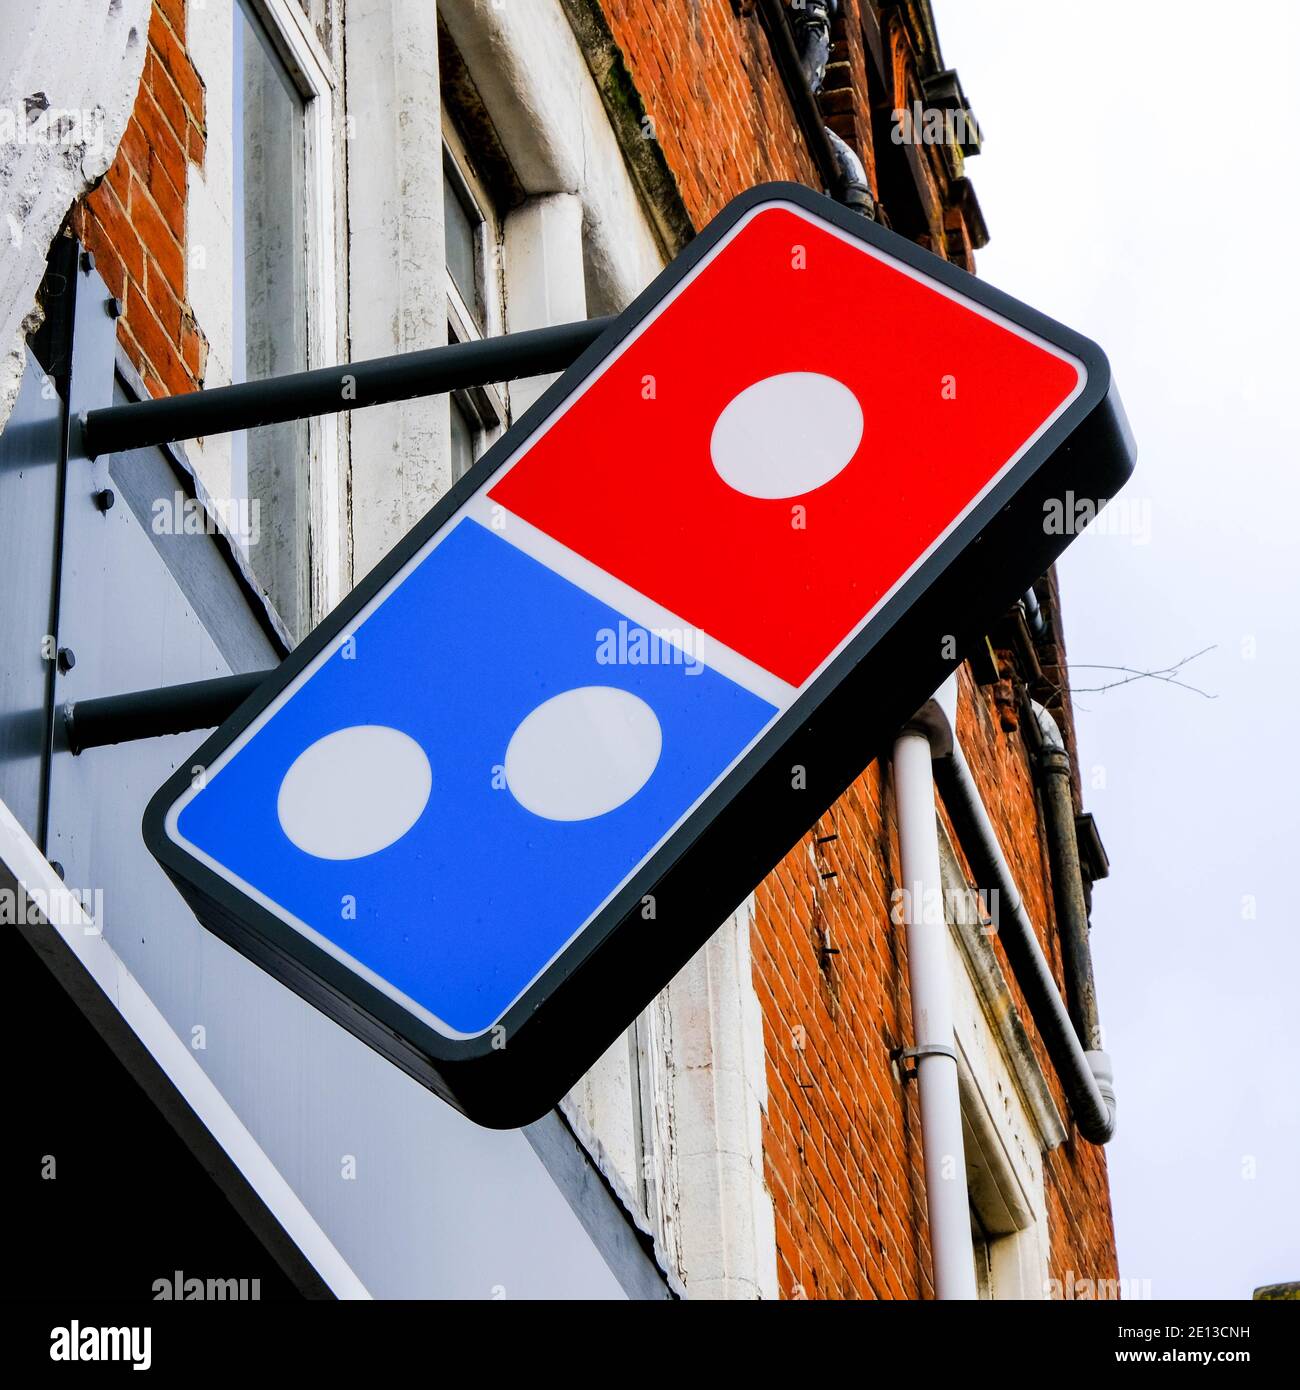 Epsom, Londres, Royaume-Uni, janvier 03 2021, logo Domino Pizza Takeaway Shop sans personne Banque D'Images